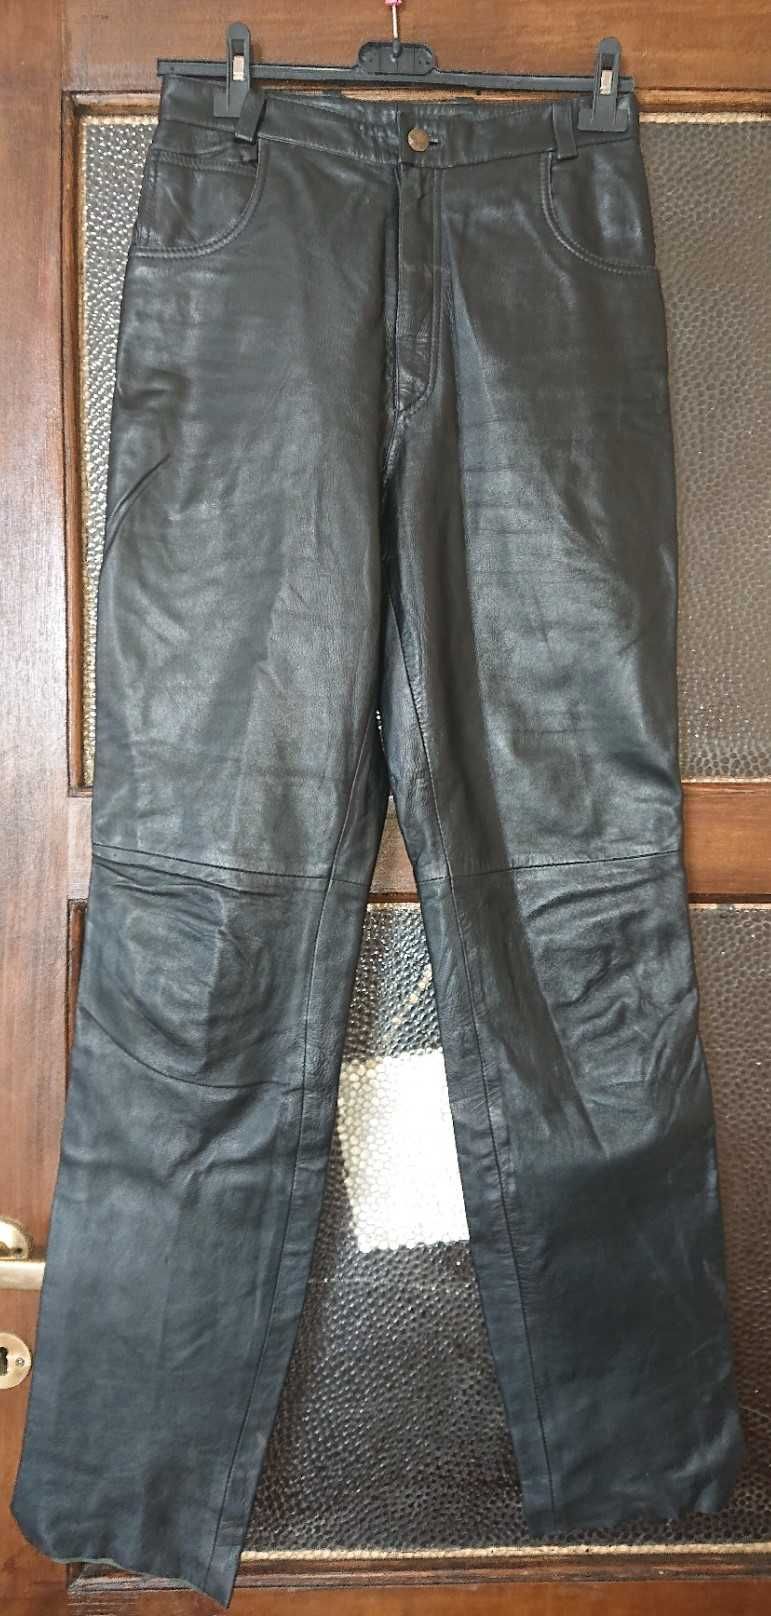 Spodnie skórzane ze skóry naturalnej czarne rozmiar 38